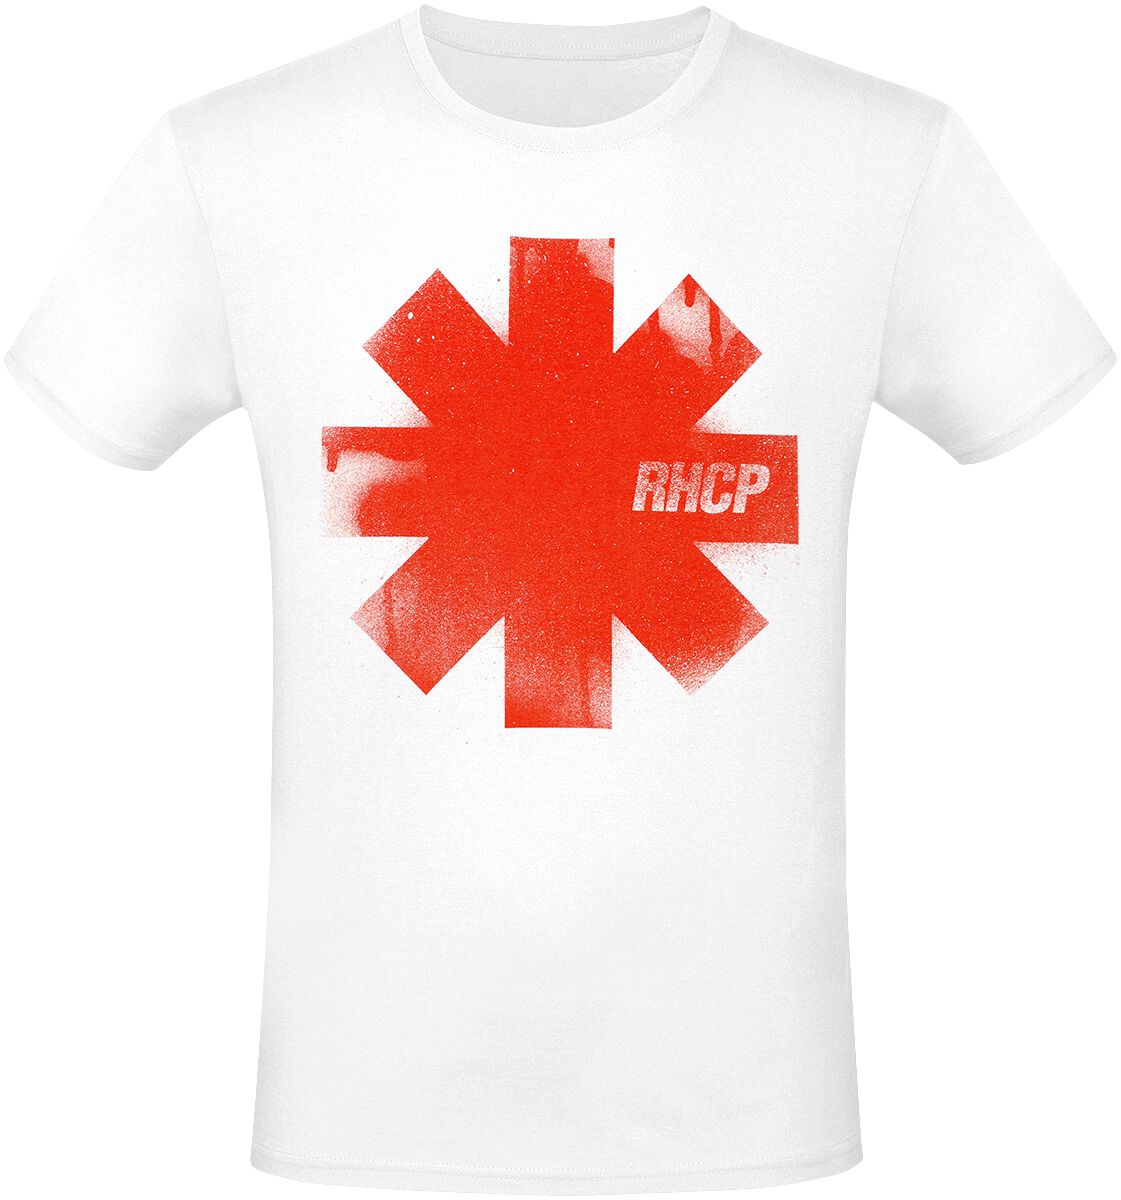 Red Hot Chili Peppers T-Shirt - Red Logo - S bis 3XL - für Männer - Größe 3XL - weiß  - Lizenziertes Merchandise!